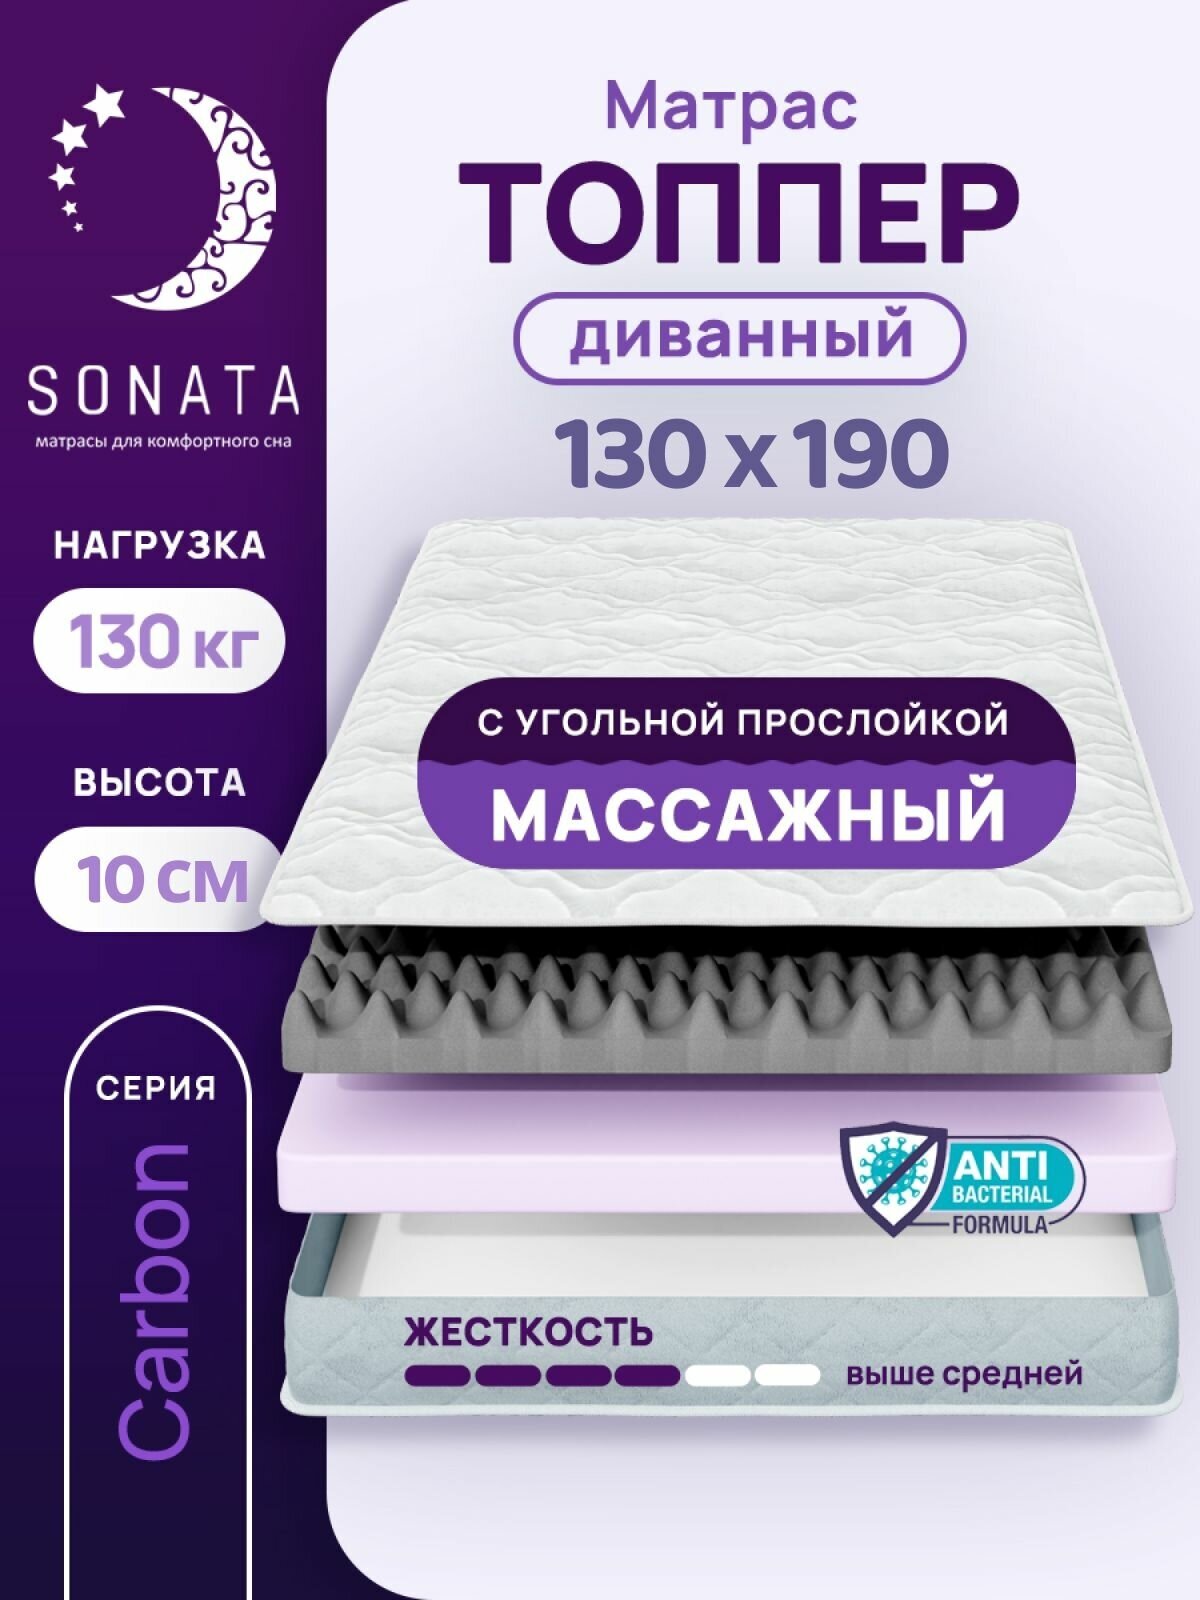 Топпер матрас 130х190 см SONATA, ортопедический, беспружинный, односпальный, тонкий матрац для дивана, кровати, высота 10 см с массажным эффектом